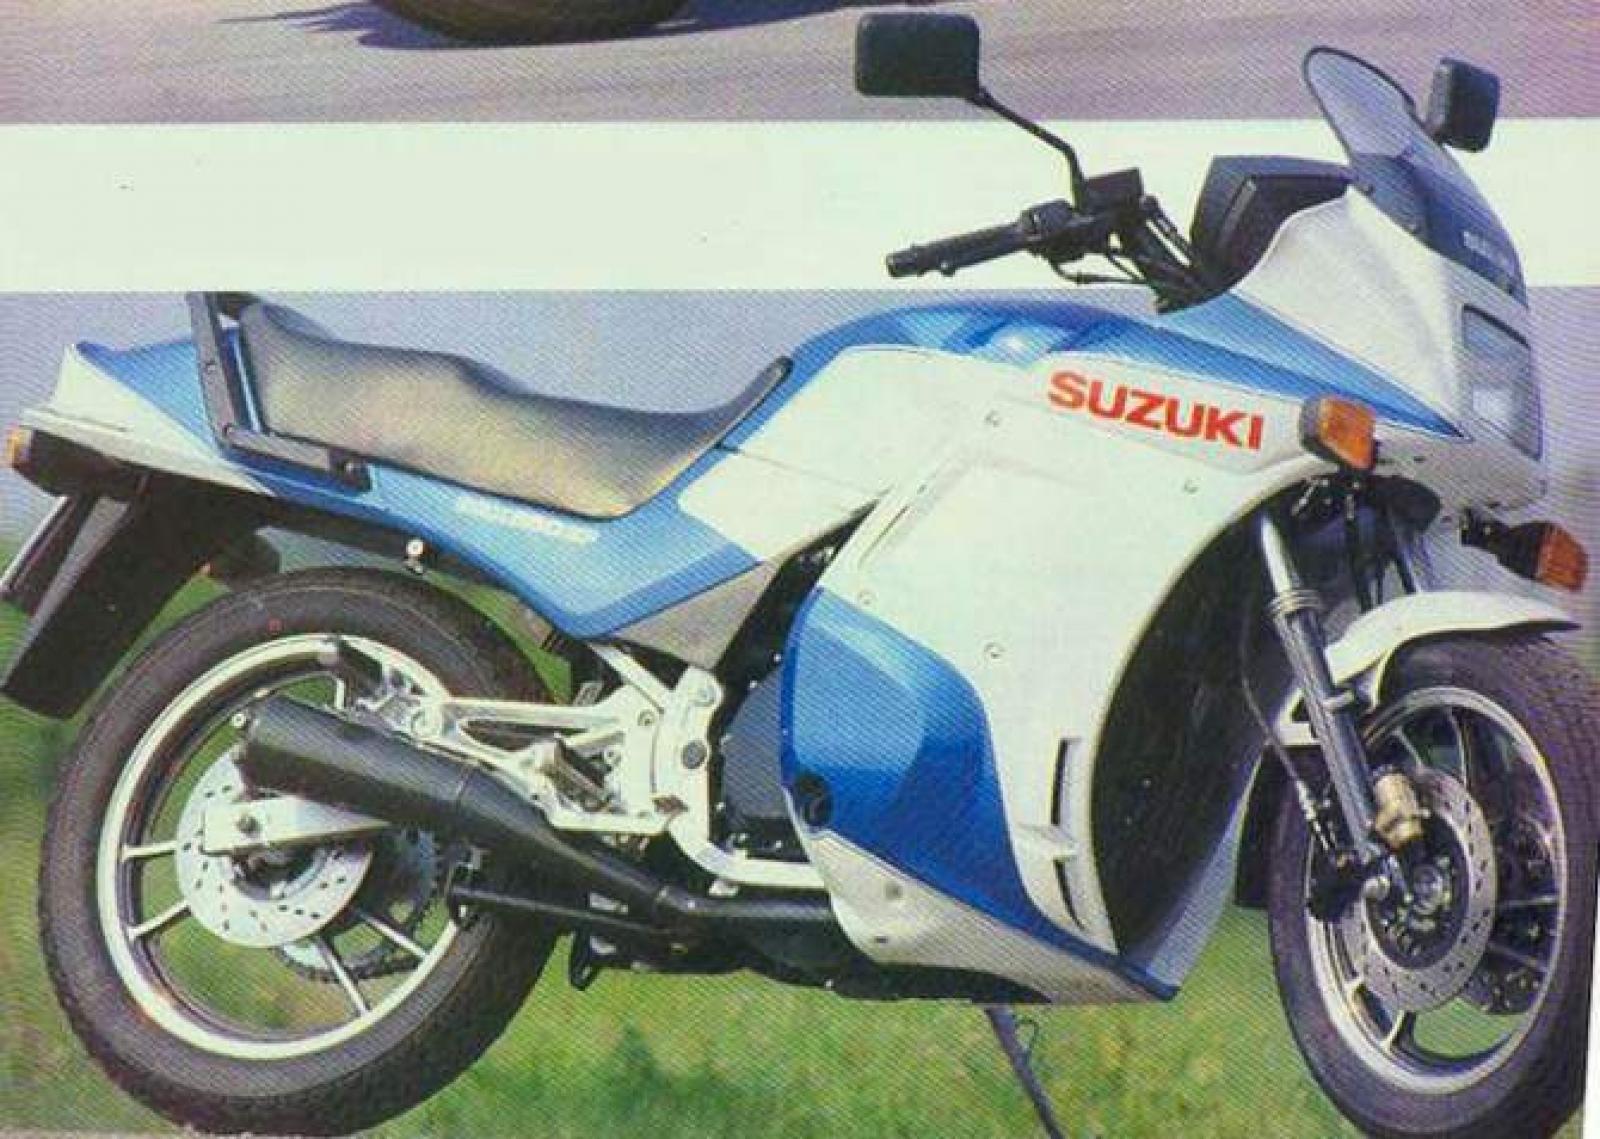 1984 Suzuki GSX 550 EF